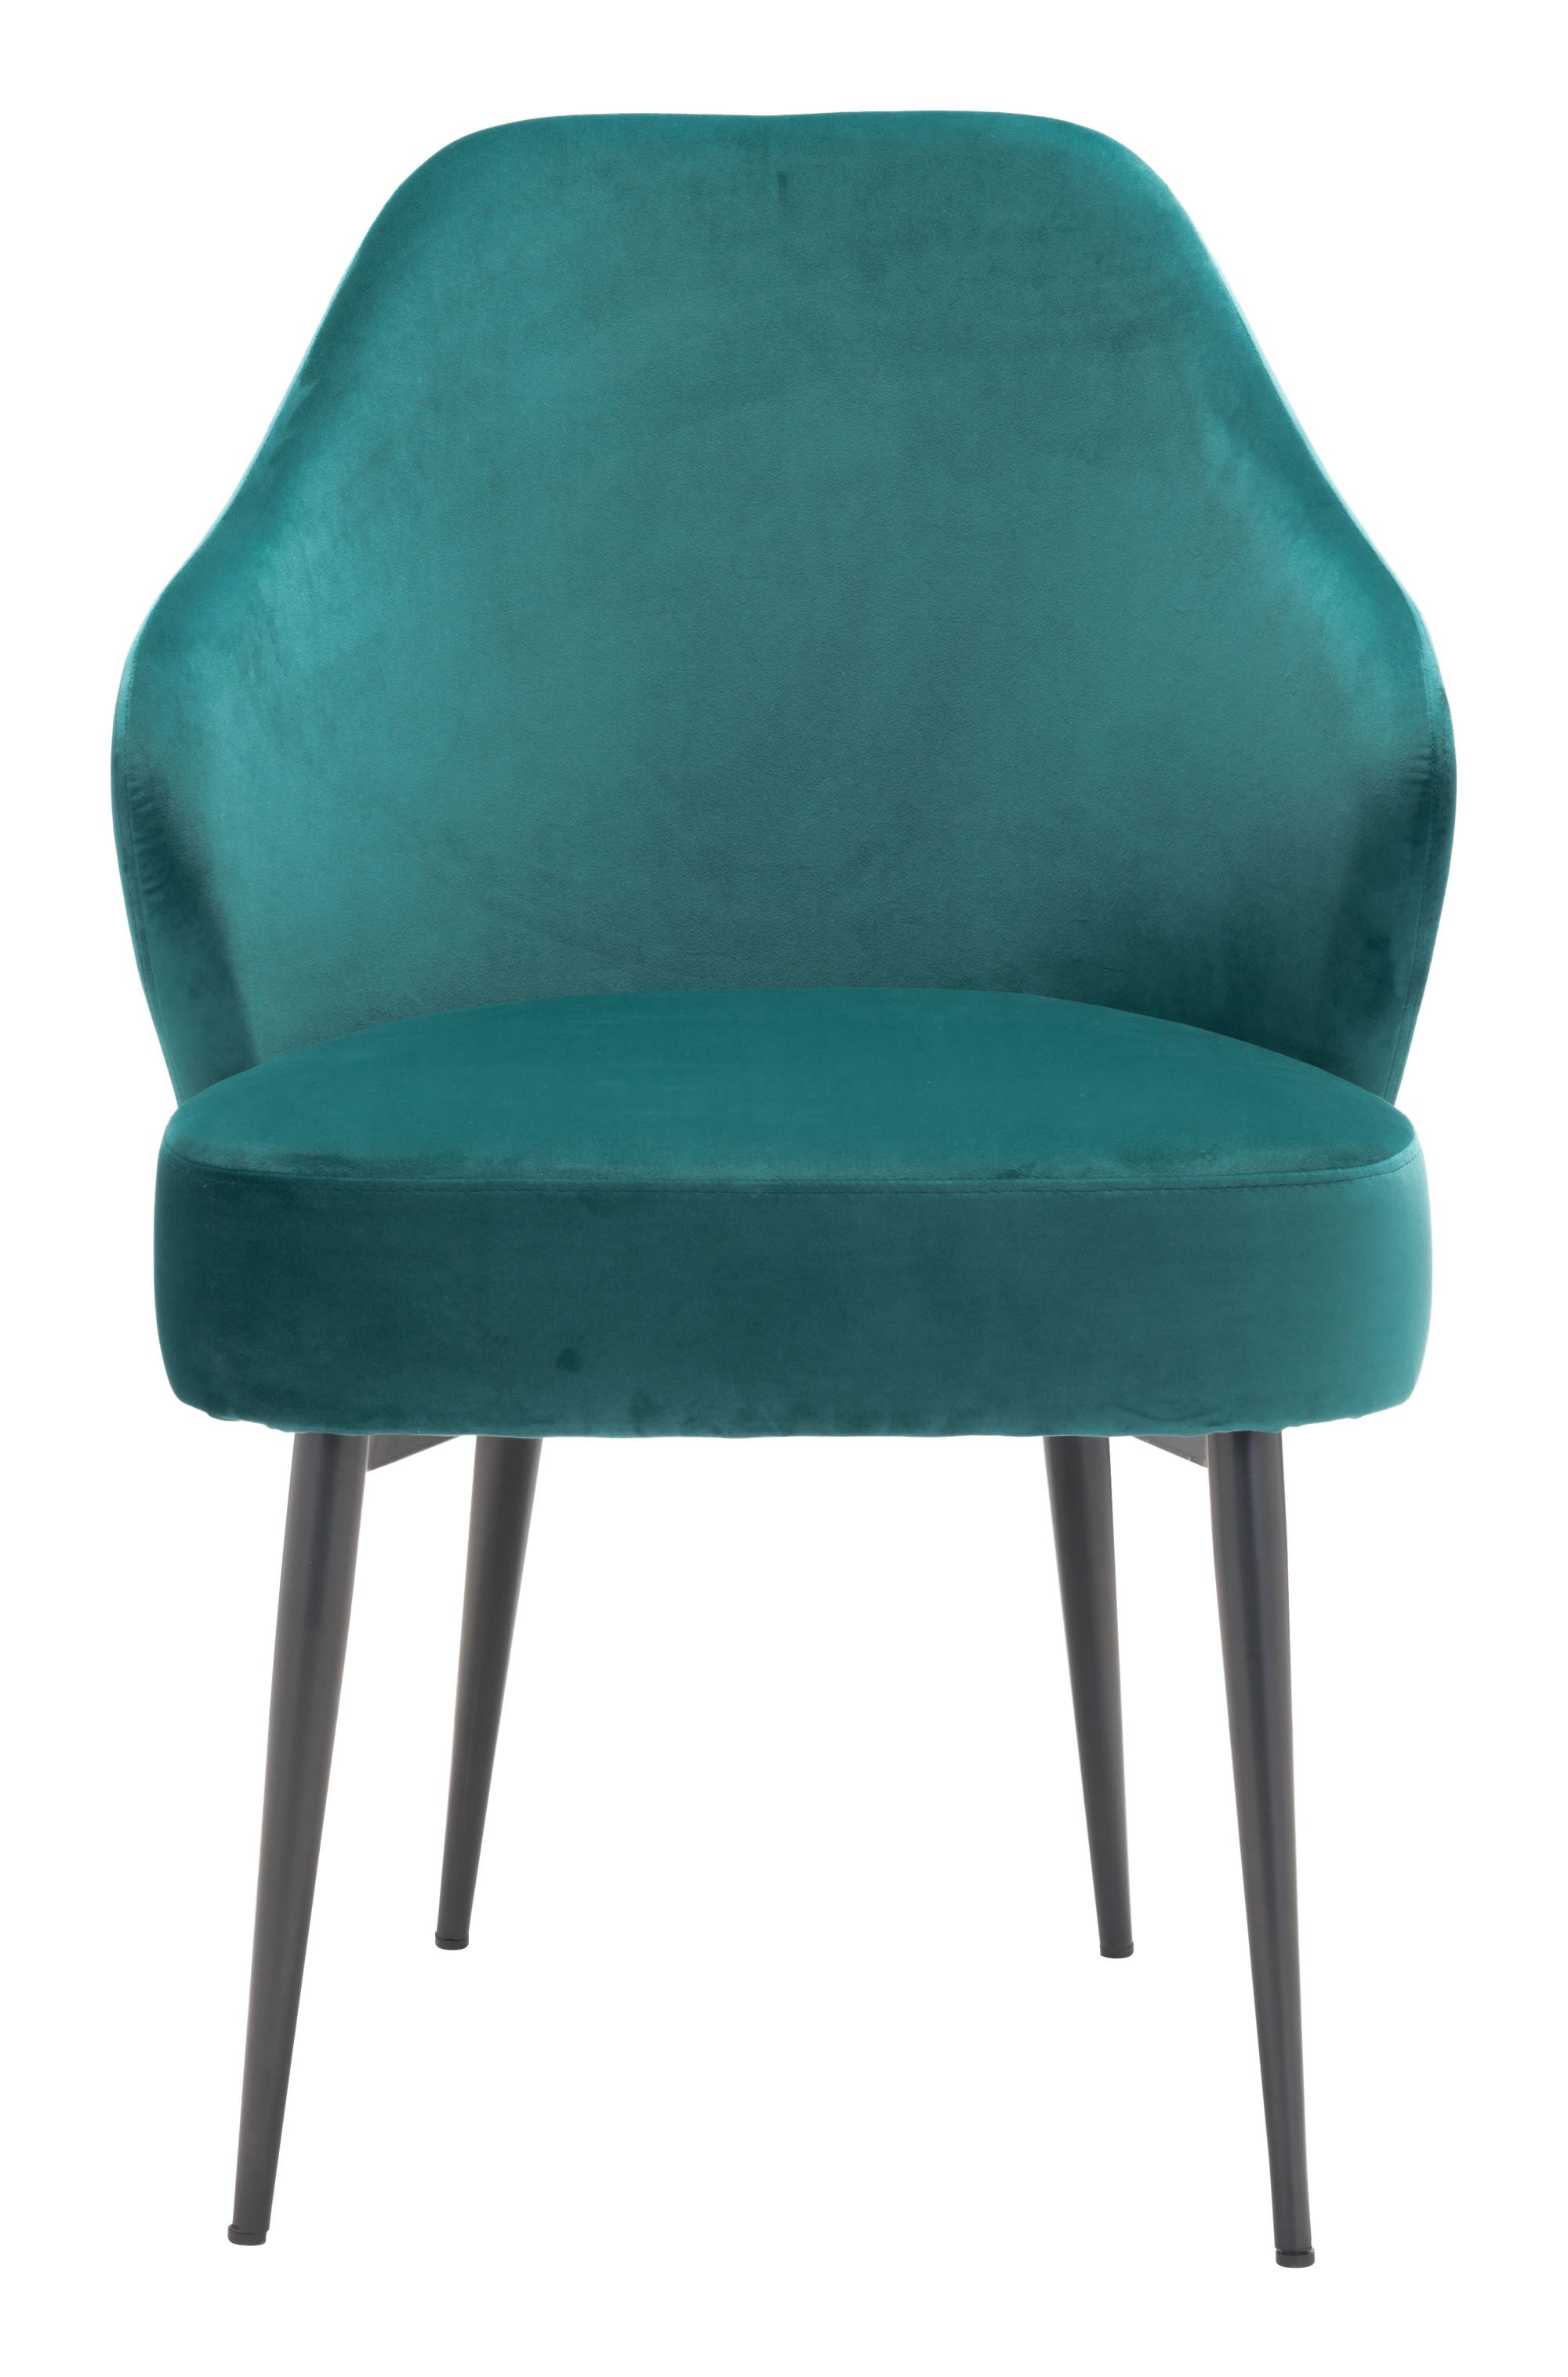 23.2" x 25.2" x 34.6" Green, Velvet, Steel, Dining Chair